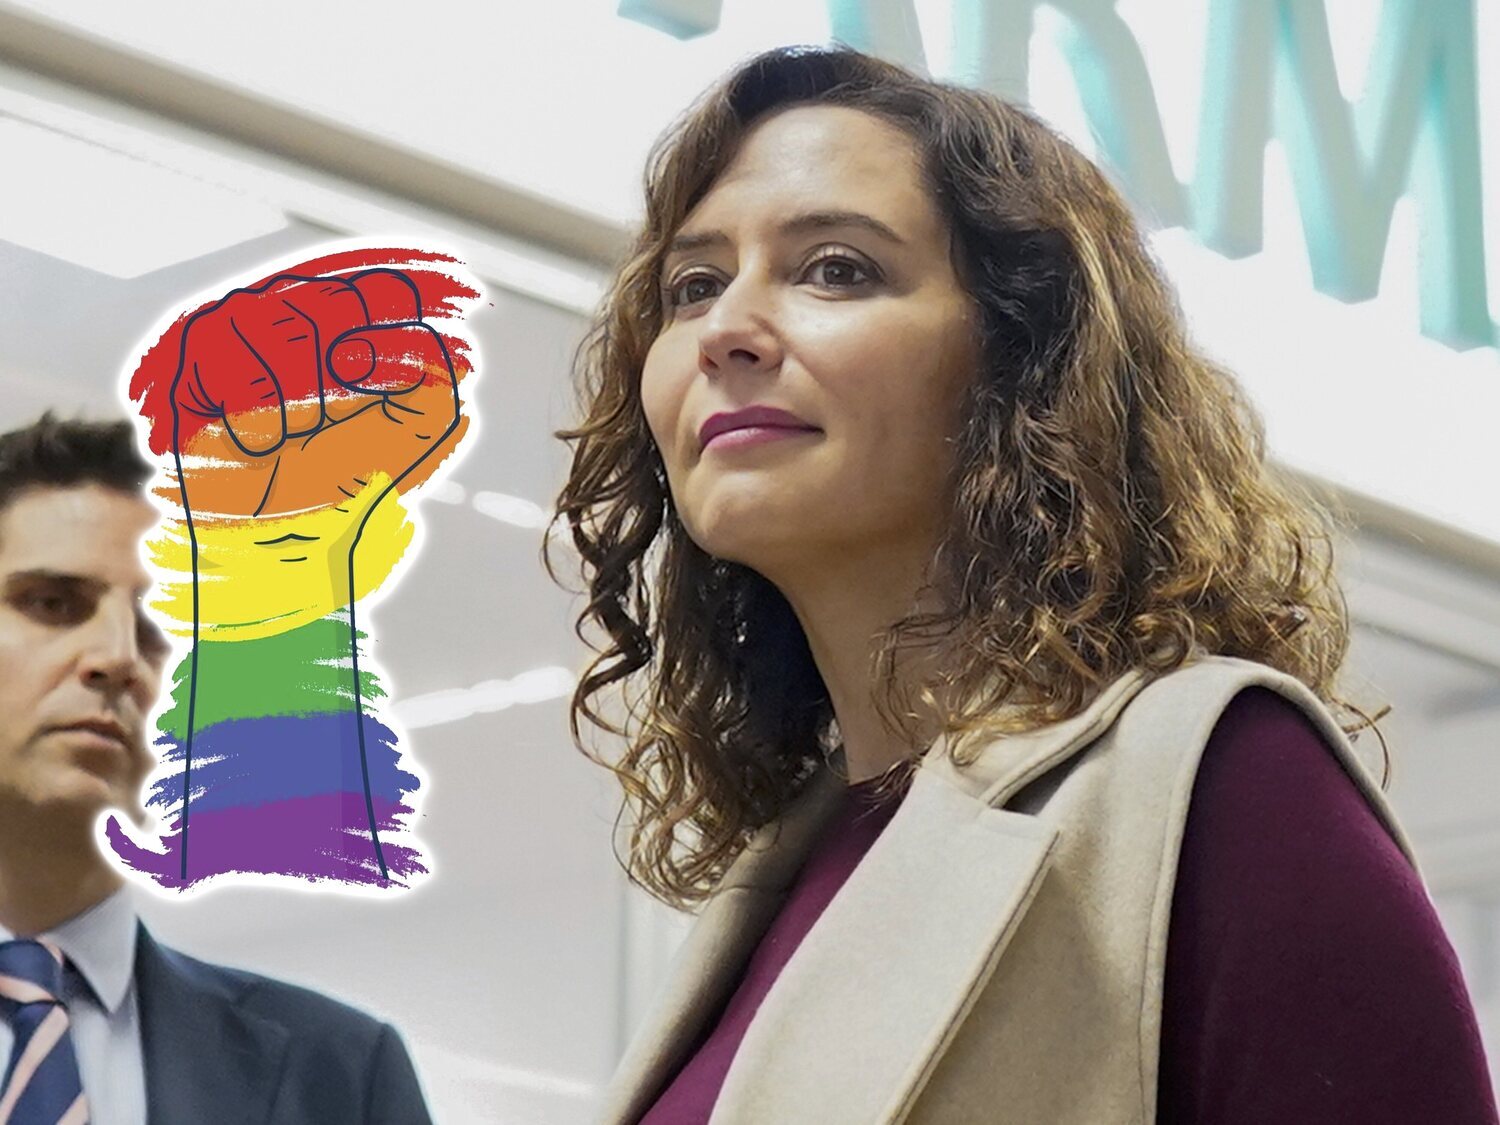 Ayuso aprueba la derogación parcial de las leyes LGTBI y trans en Madrid por "vía de urgencia"